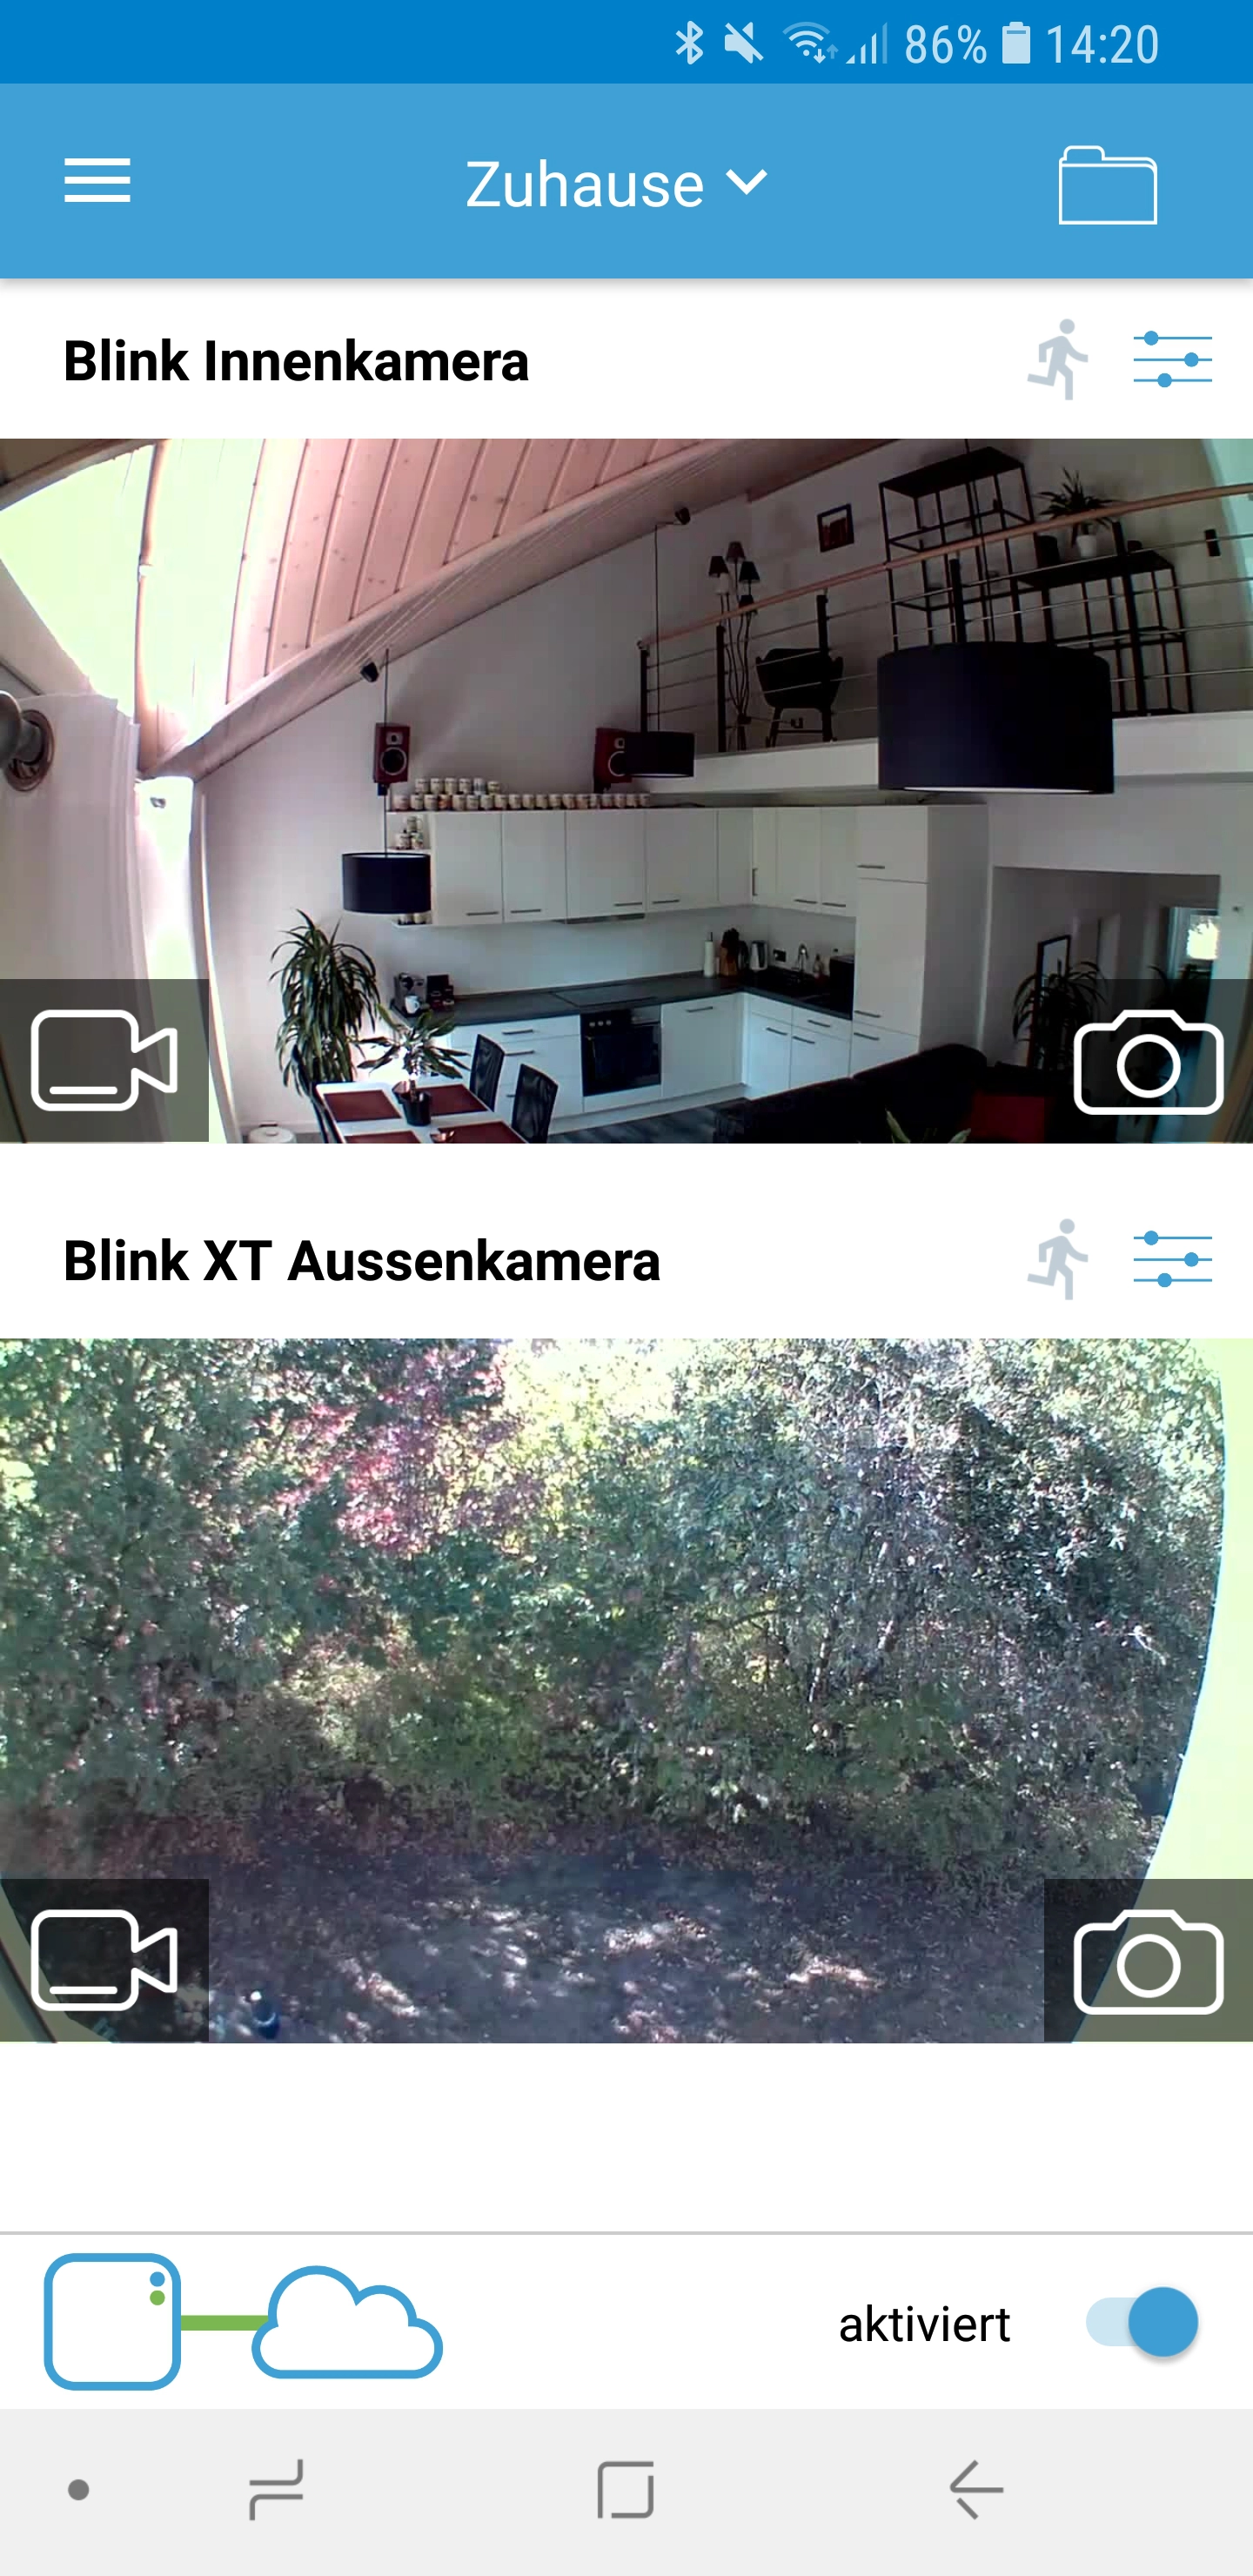 Blink XT App 09